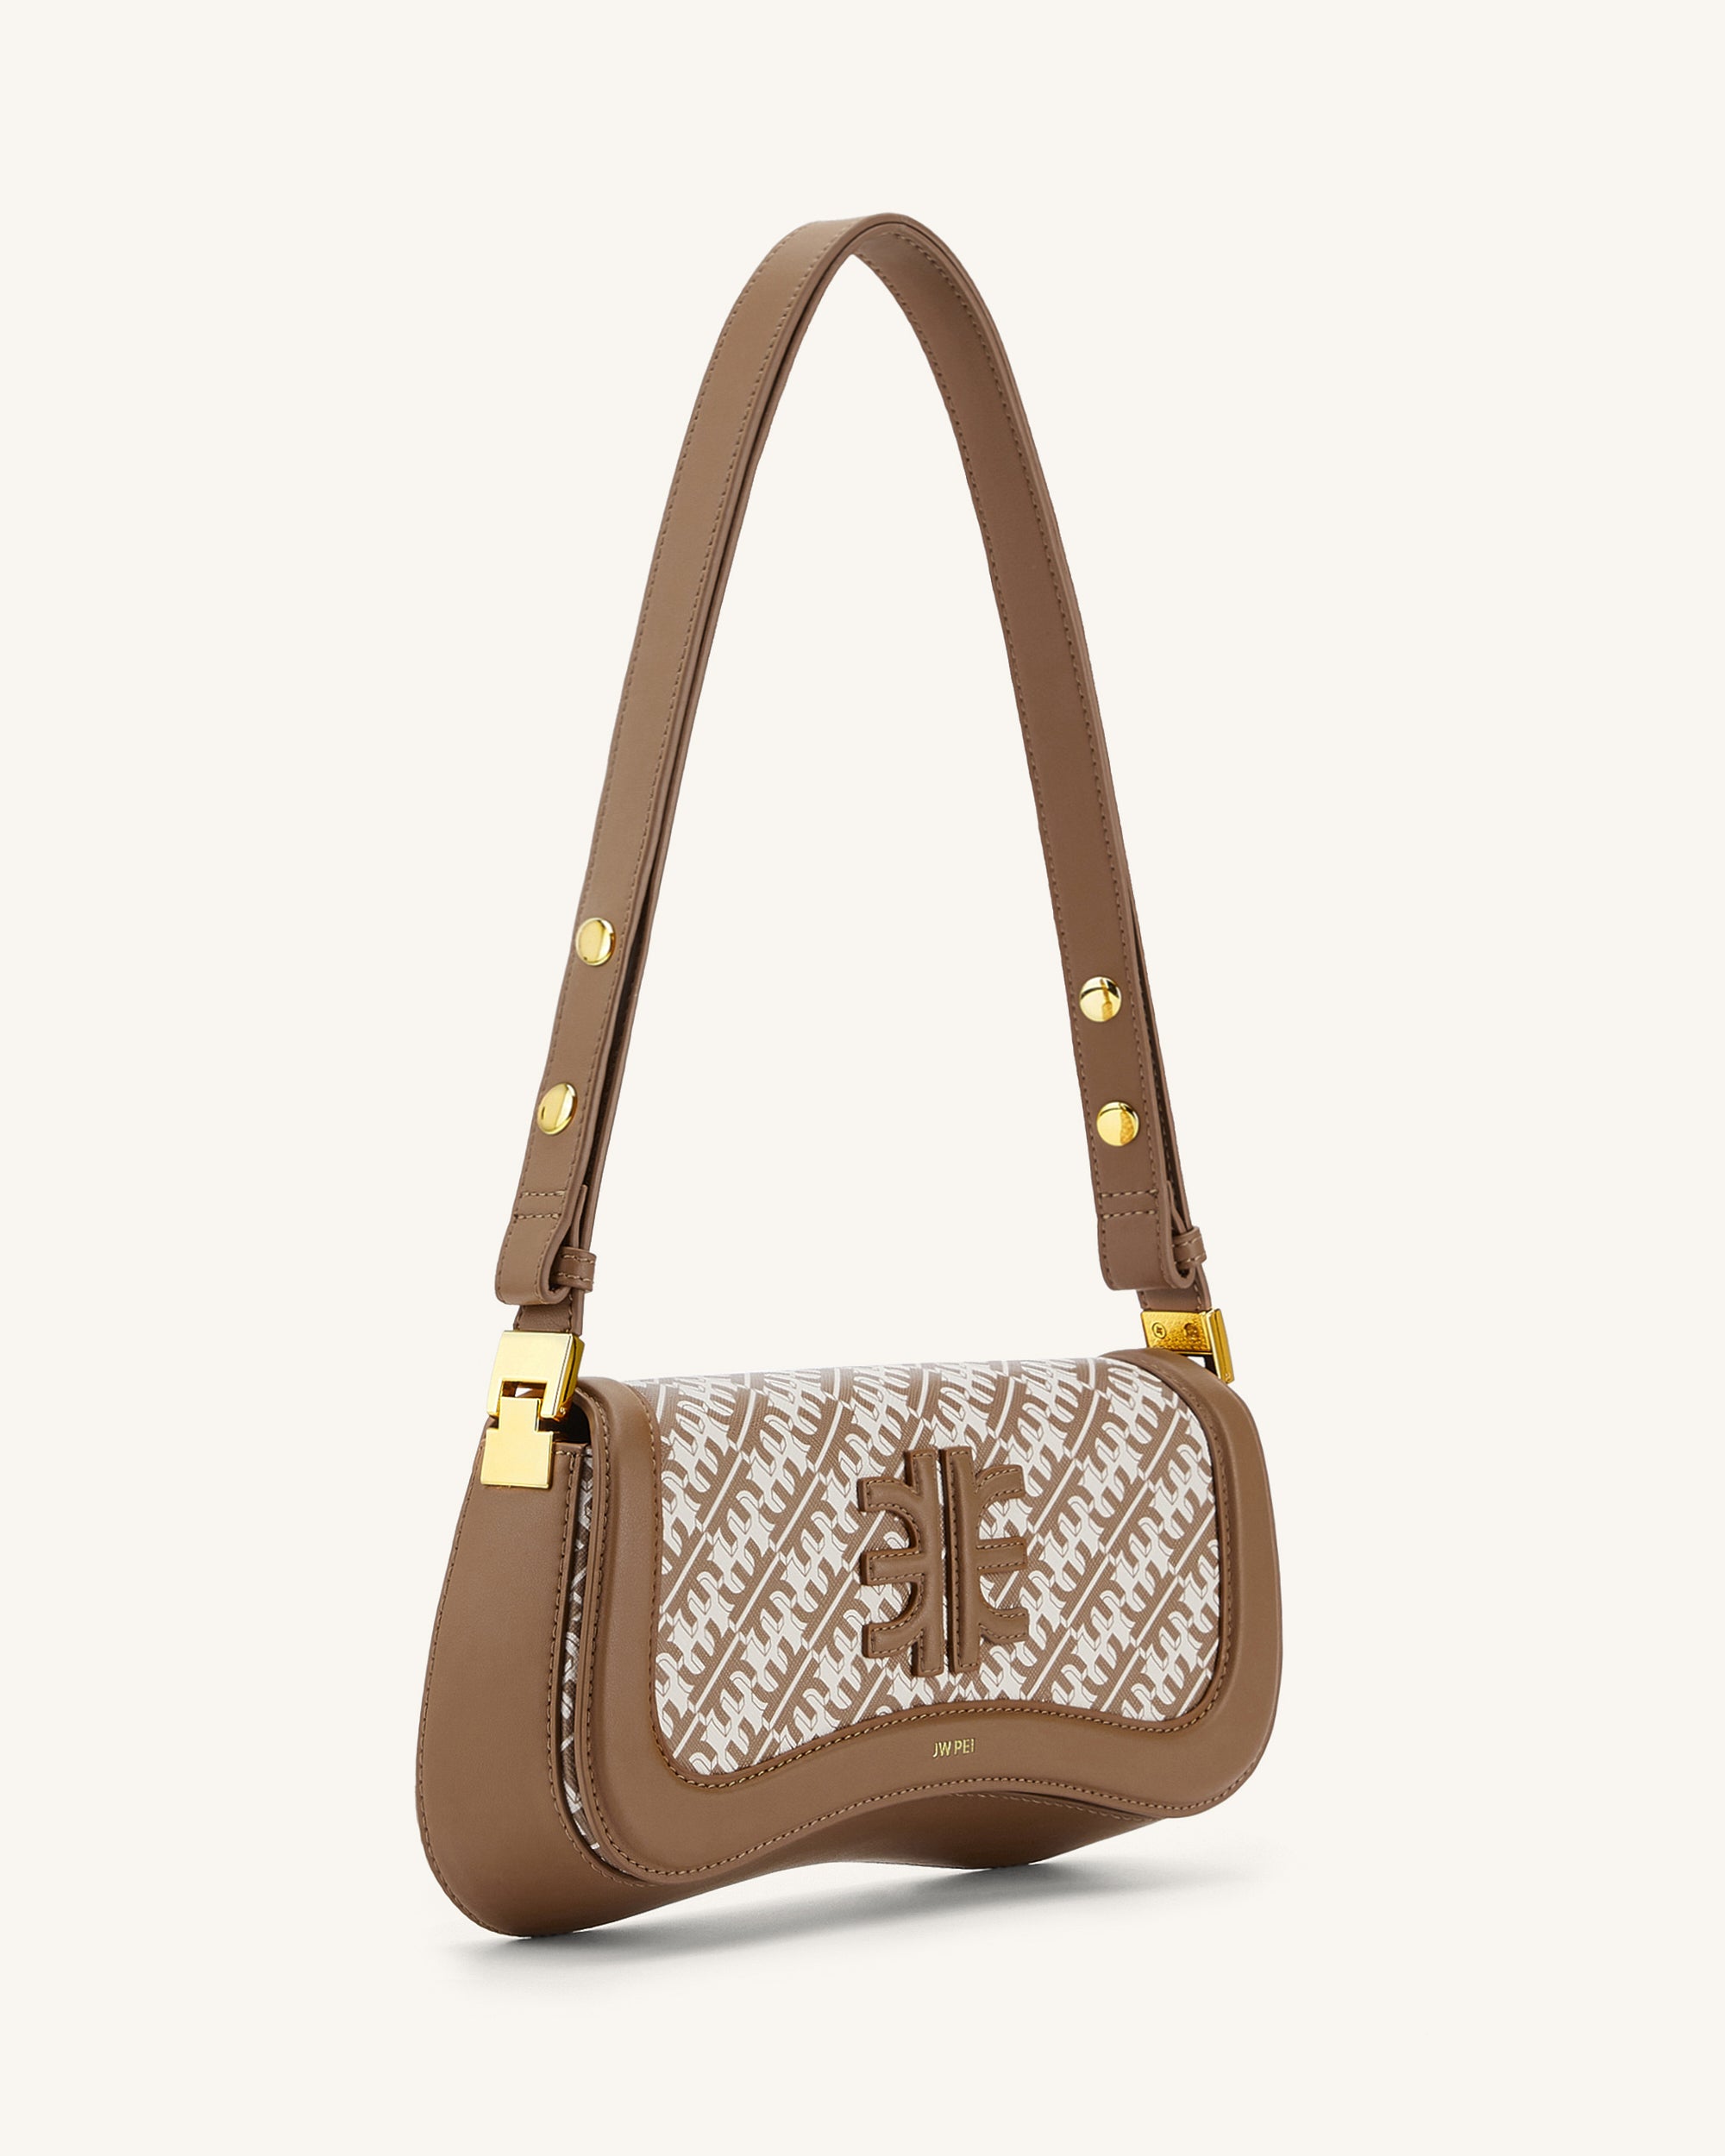 JW PEI Women's FEI Crossbody Phone Bag: Handbags